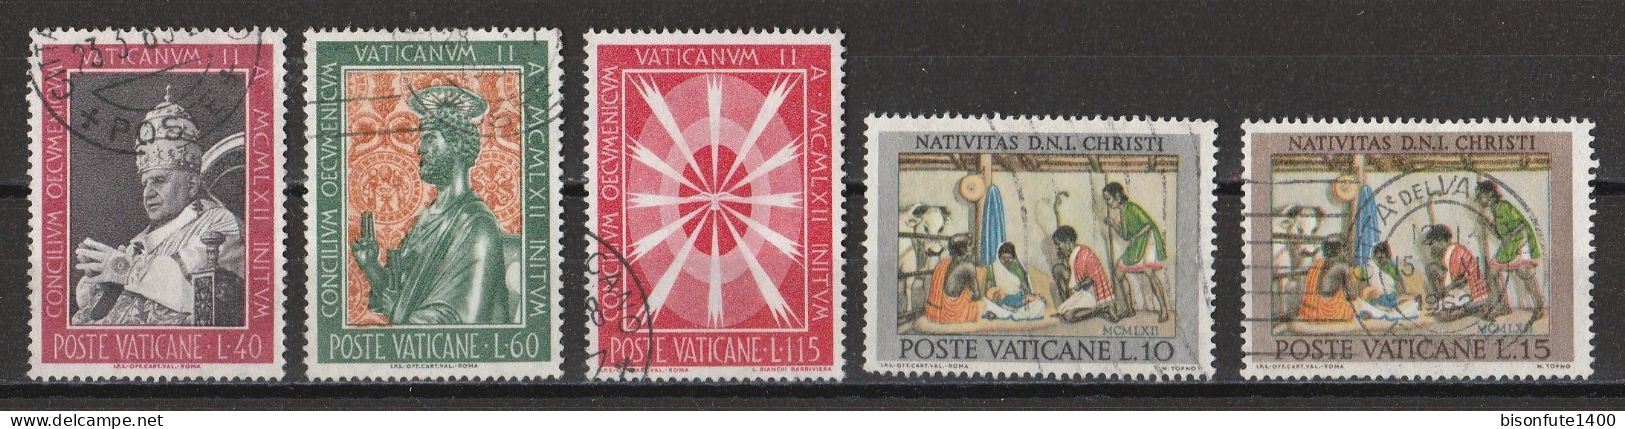 Vatican 1962 : Timbres Yvert & Tellier N° 357 - 358 - 360 - 364 - 366 - 367 - 368 - 369 - 370 - 371 Et 372 Oblitérés. - Oblitérés